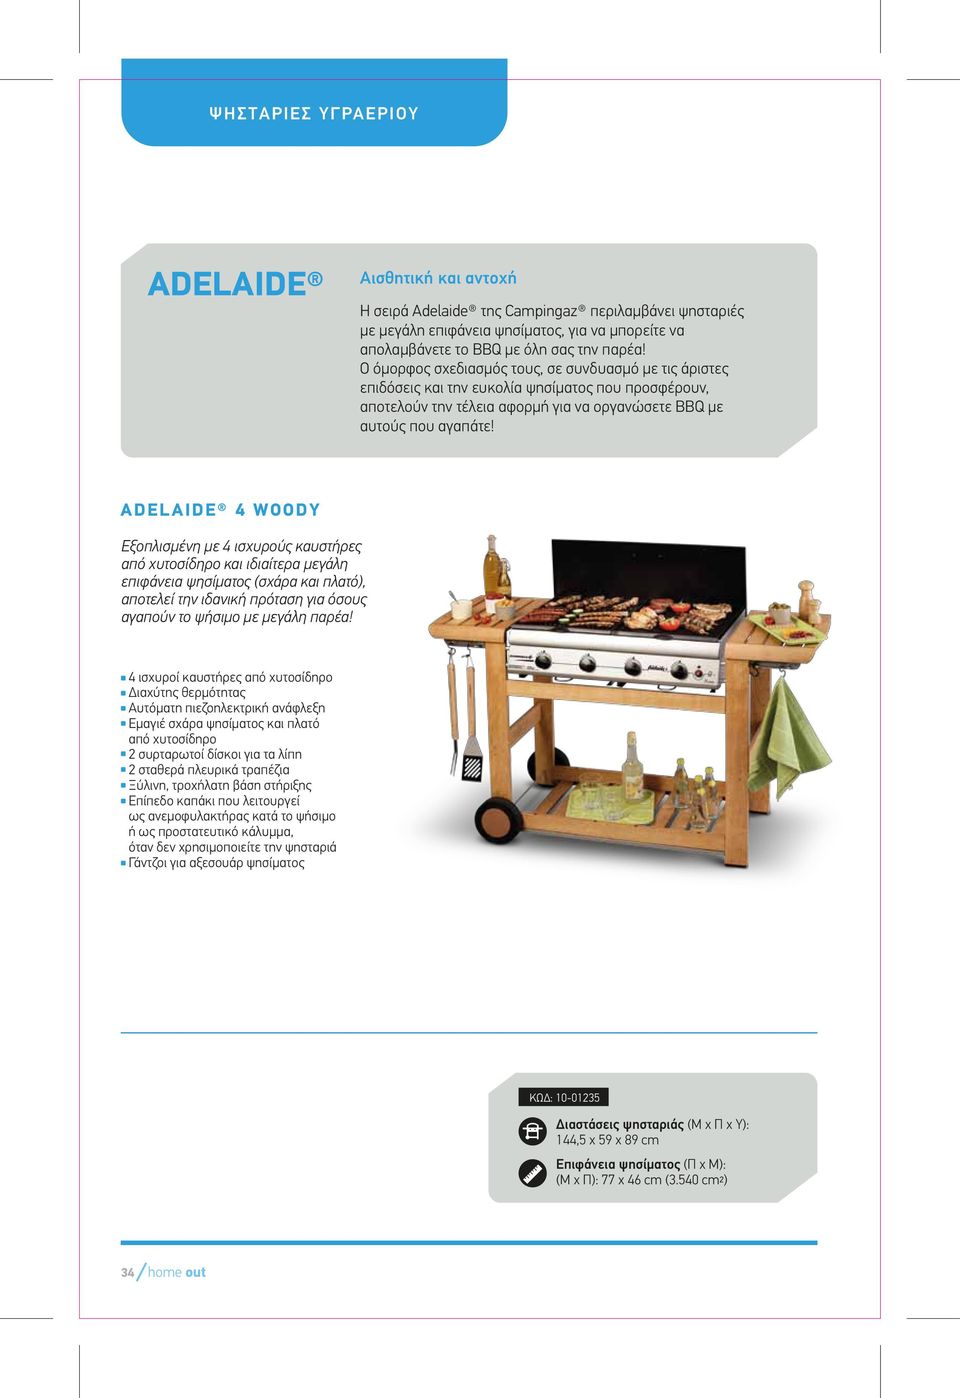 ADELAIDE 4 WOODY Εξοπλισµένη µε 4 ισχυρούς καυστήρες από χυτοσίδηρο και ιδιαίτερα µεγάλη επιφάνεια ψησίµατος (σχάρα και πλατό), αποτελεί την ιδανική πρόταση για όσους αγαπούν το ψήσιµο µε µεγάλη